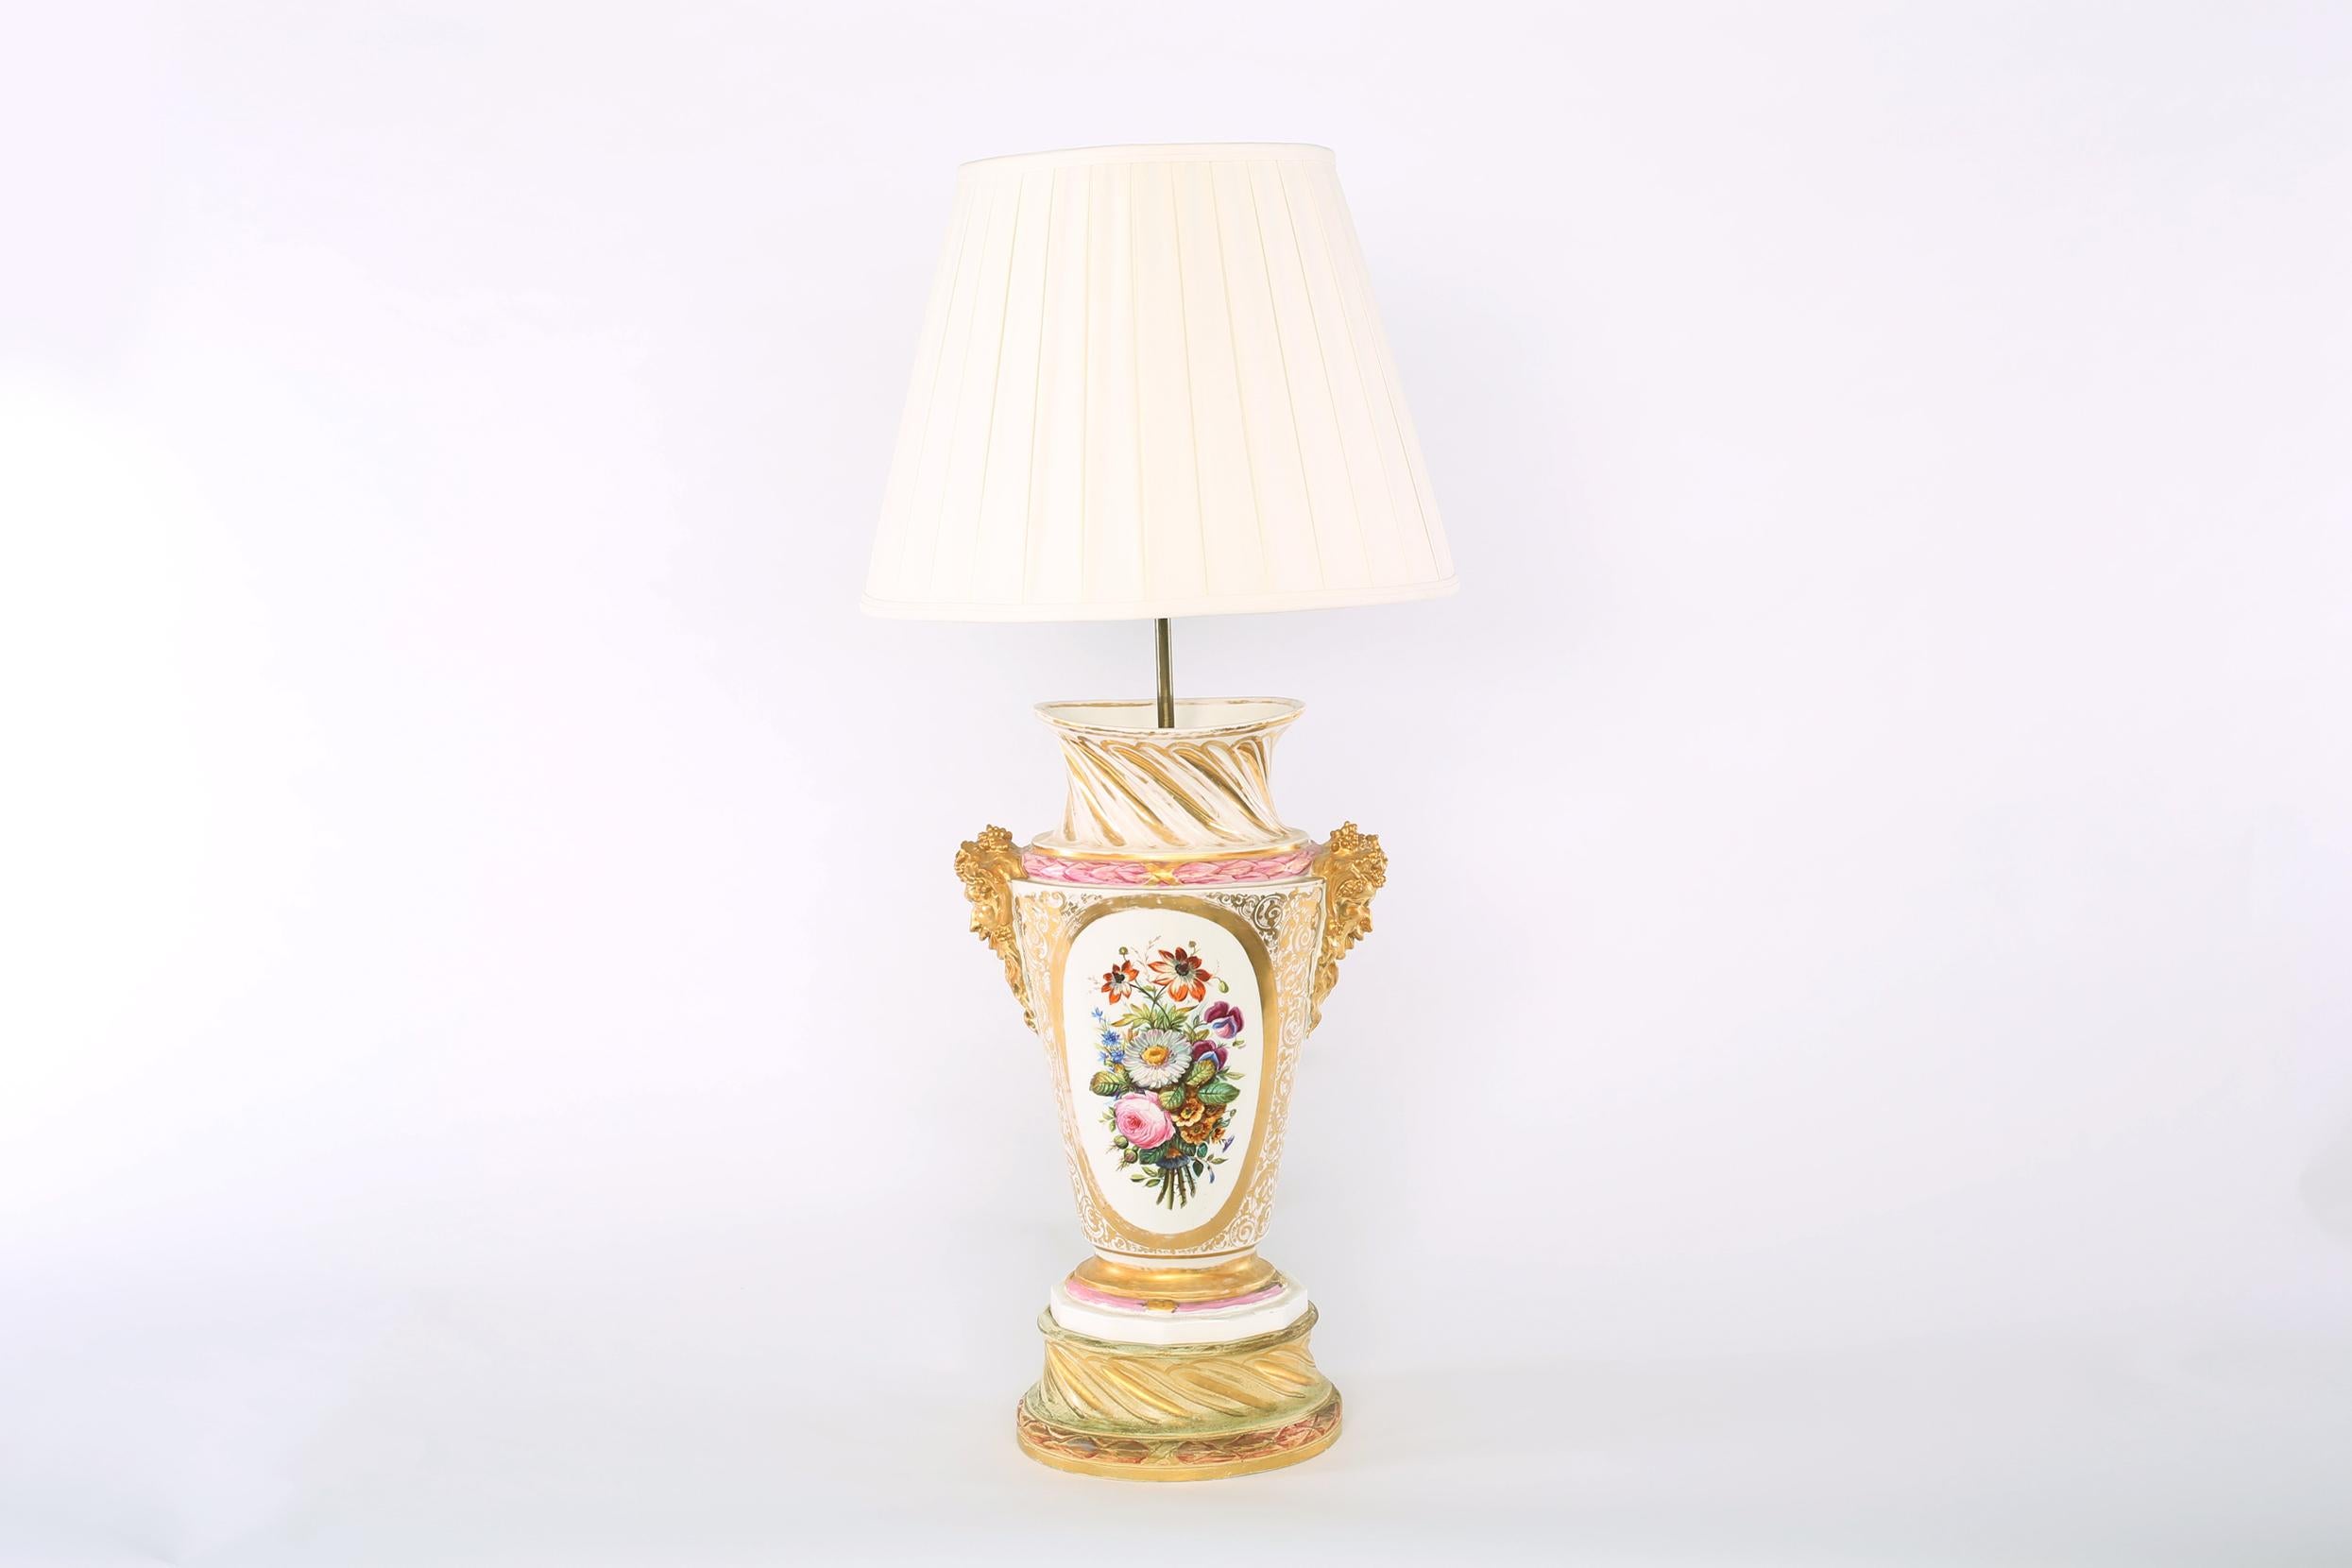 Grande paire de lampes de table/de travail en porcelaine dorée en forme d'urne avec des détails de design floral à l'extérieur. Chaque lampe est en bon état de fonctionnement. Usure mineure correspondant à l'âge/à l'utilisation. Chaque pied de lampe